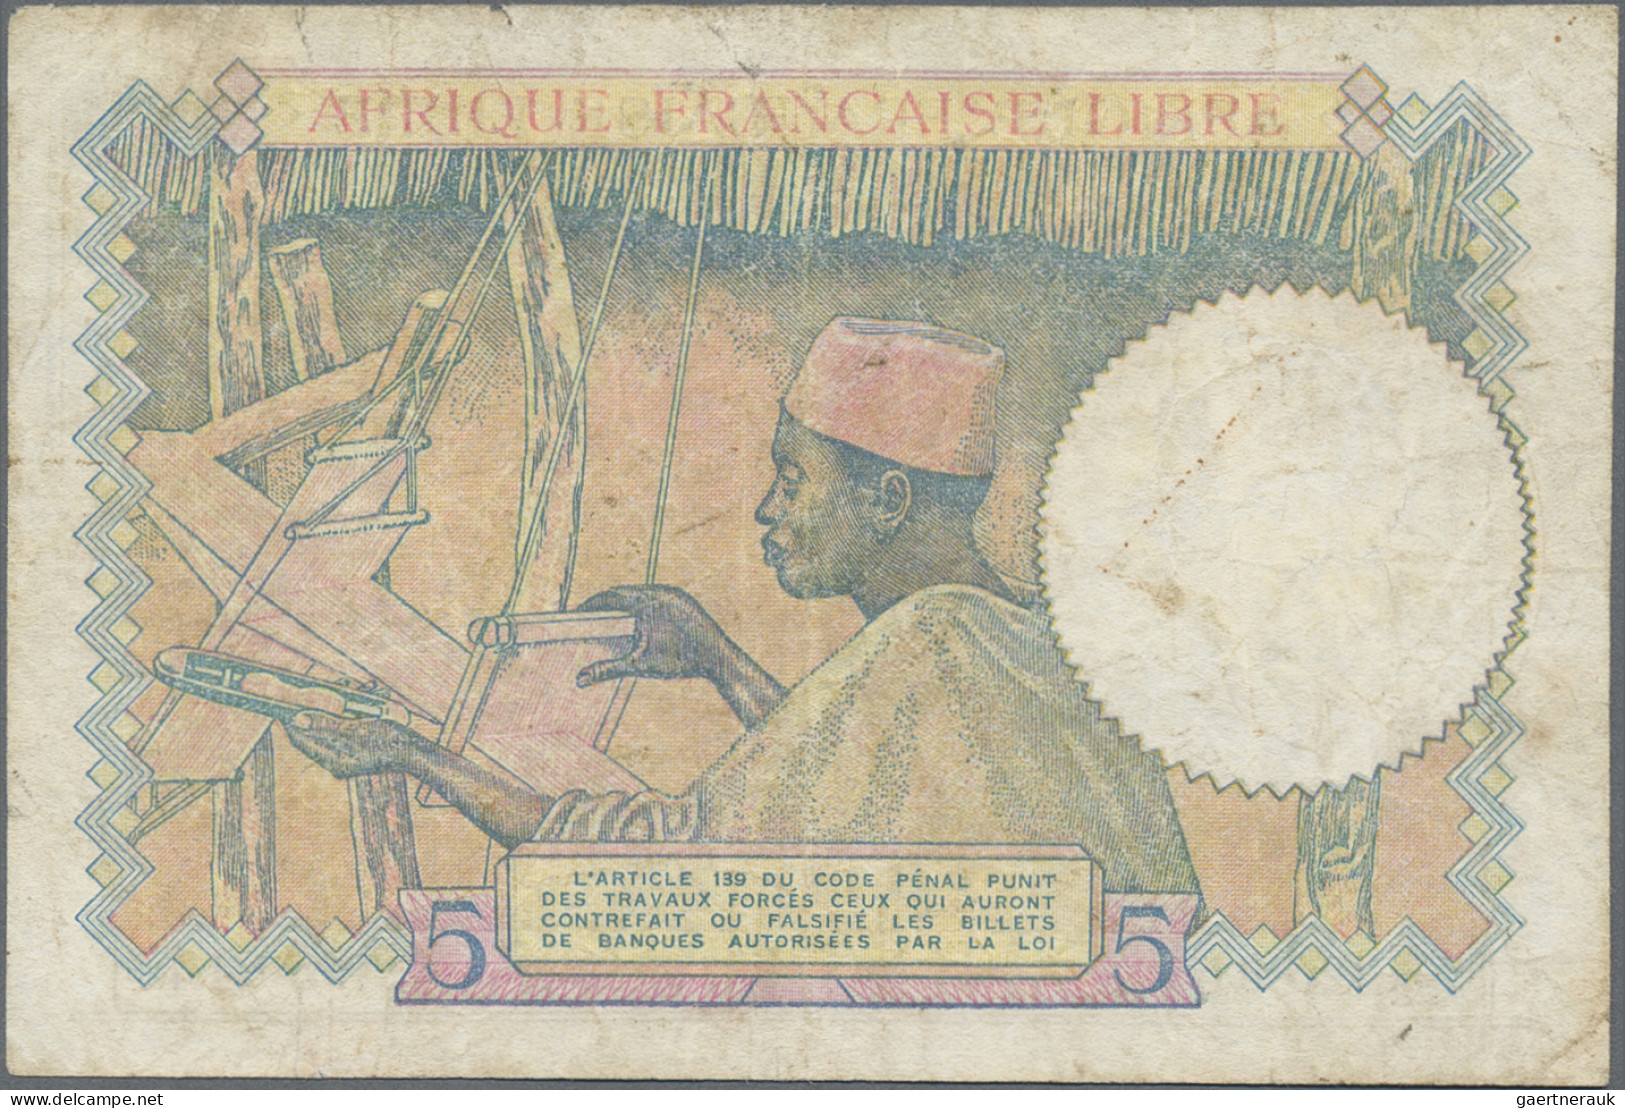 French Equatorial Africa: Afrique Française Libre, Caisse Centrale de la France